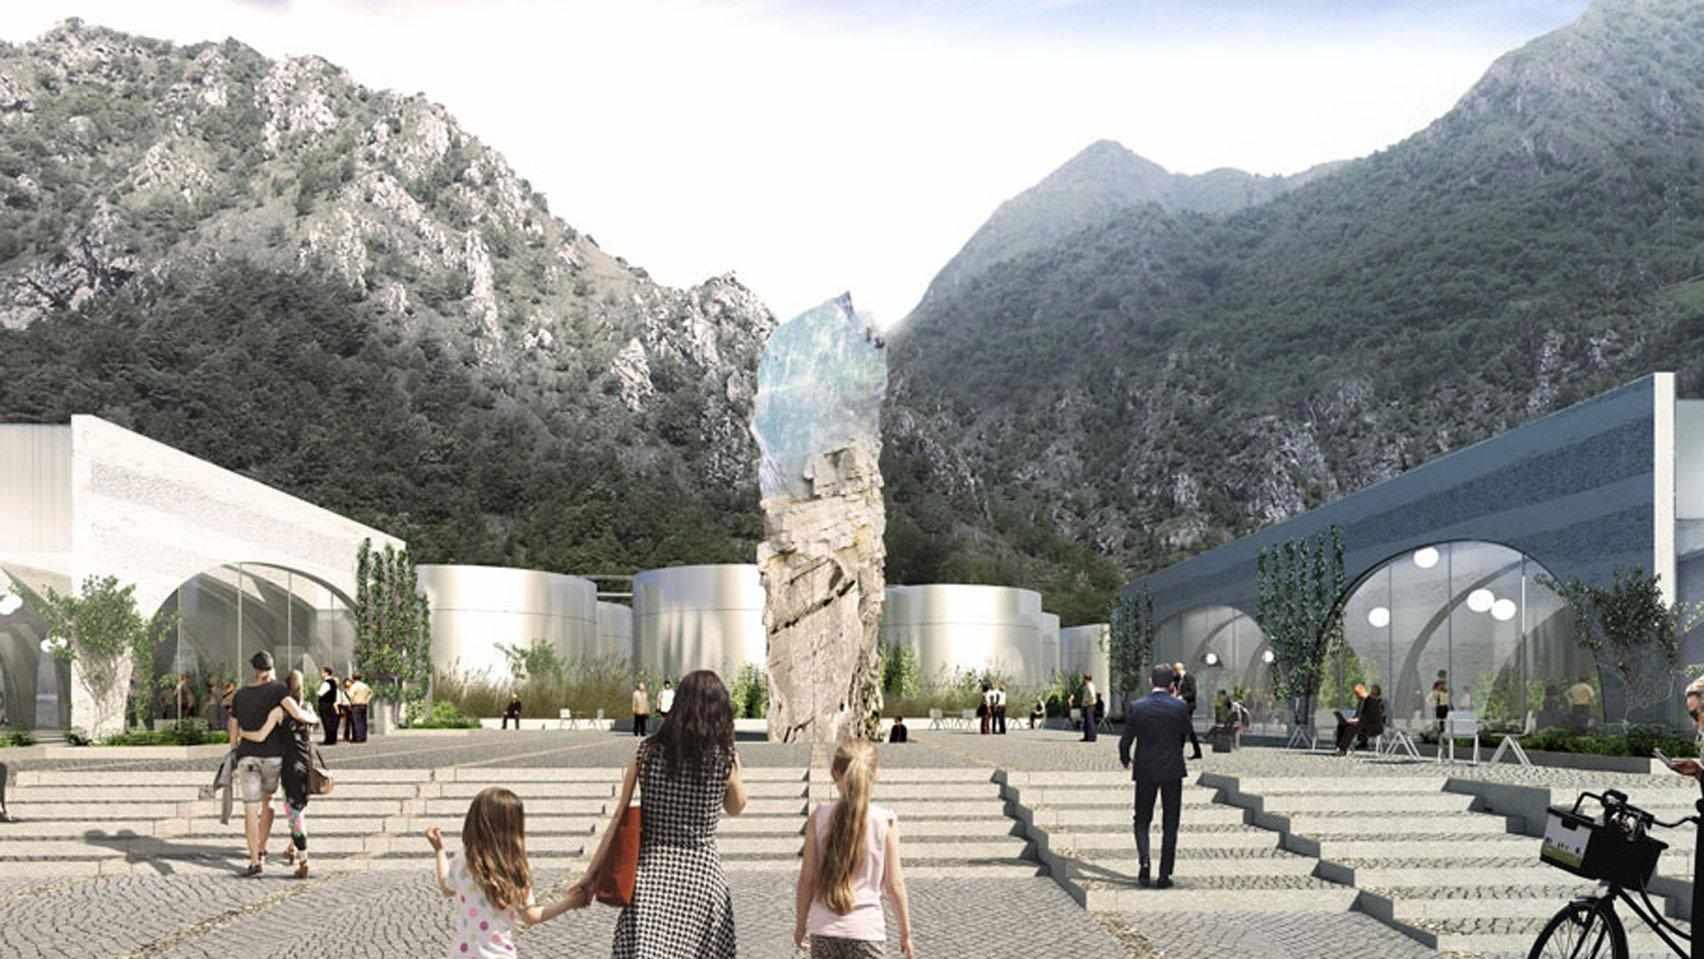 Lo studio di architettura BIG realizzerà il nuovo HQ di San Pellegrino